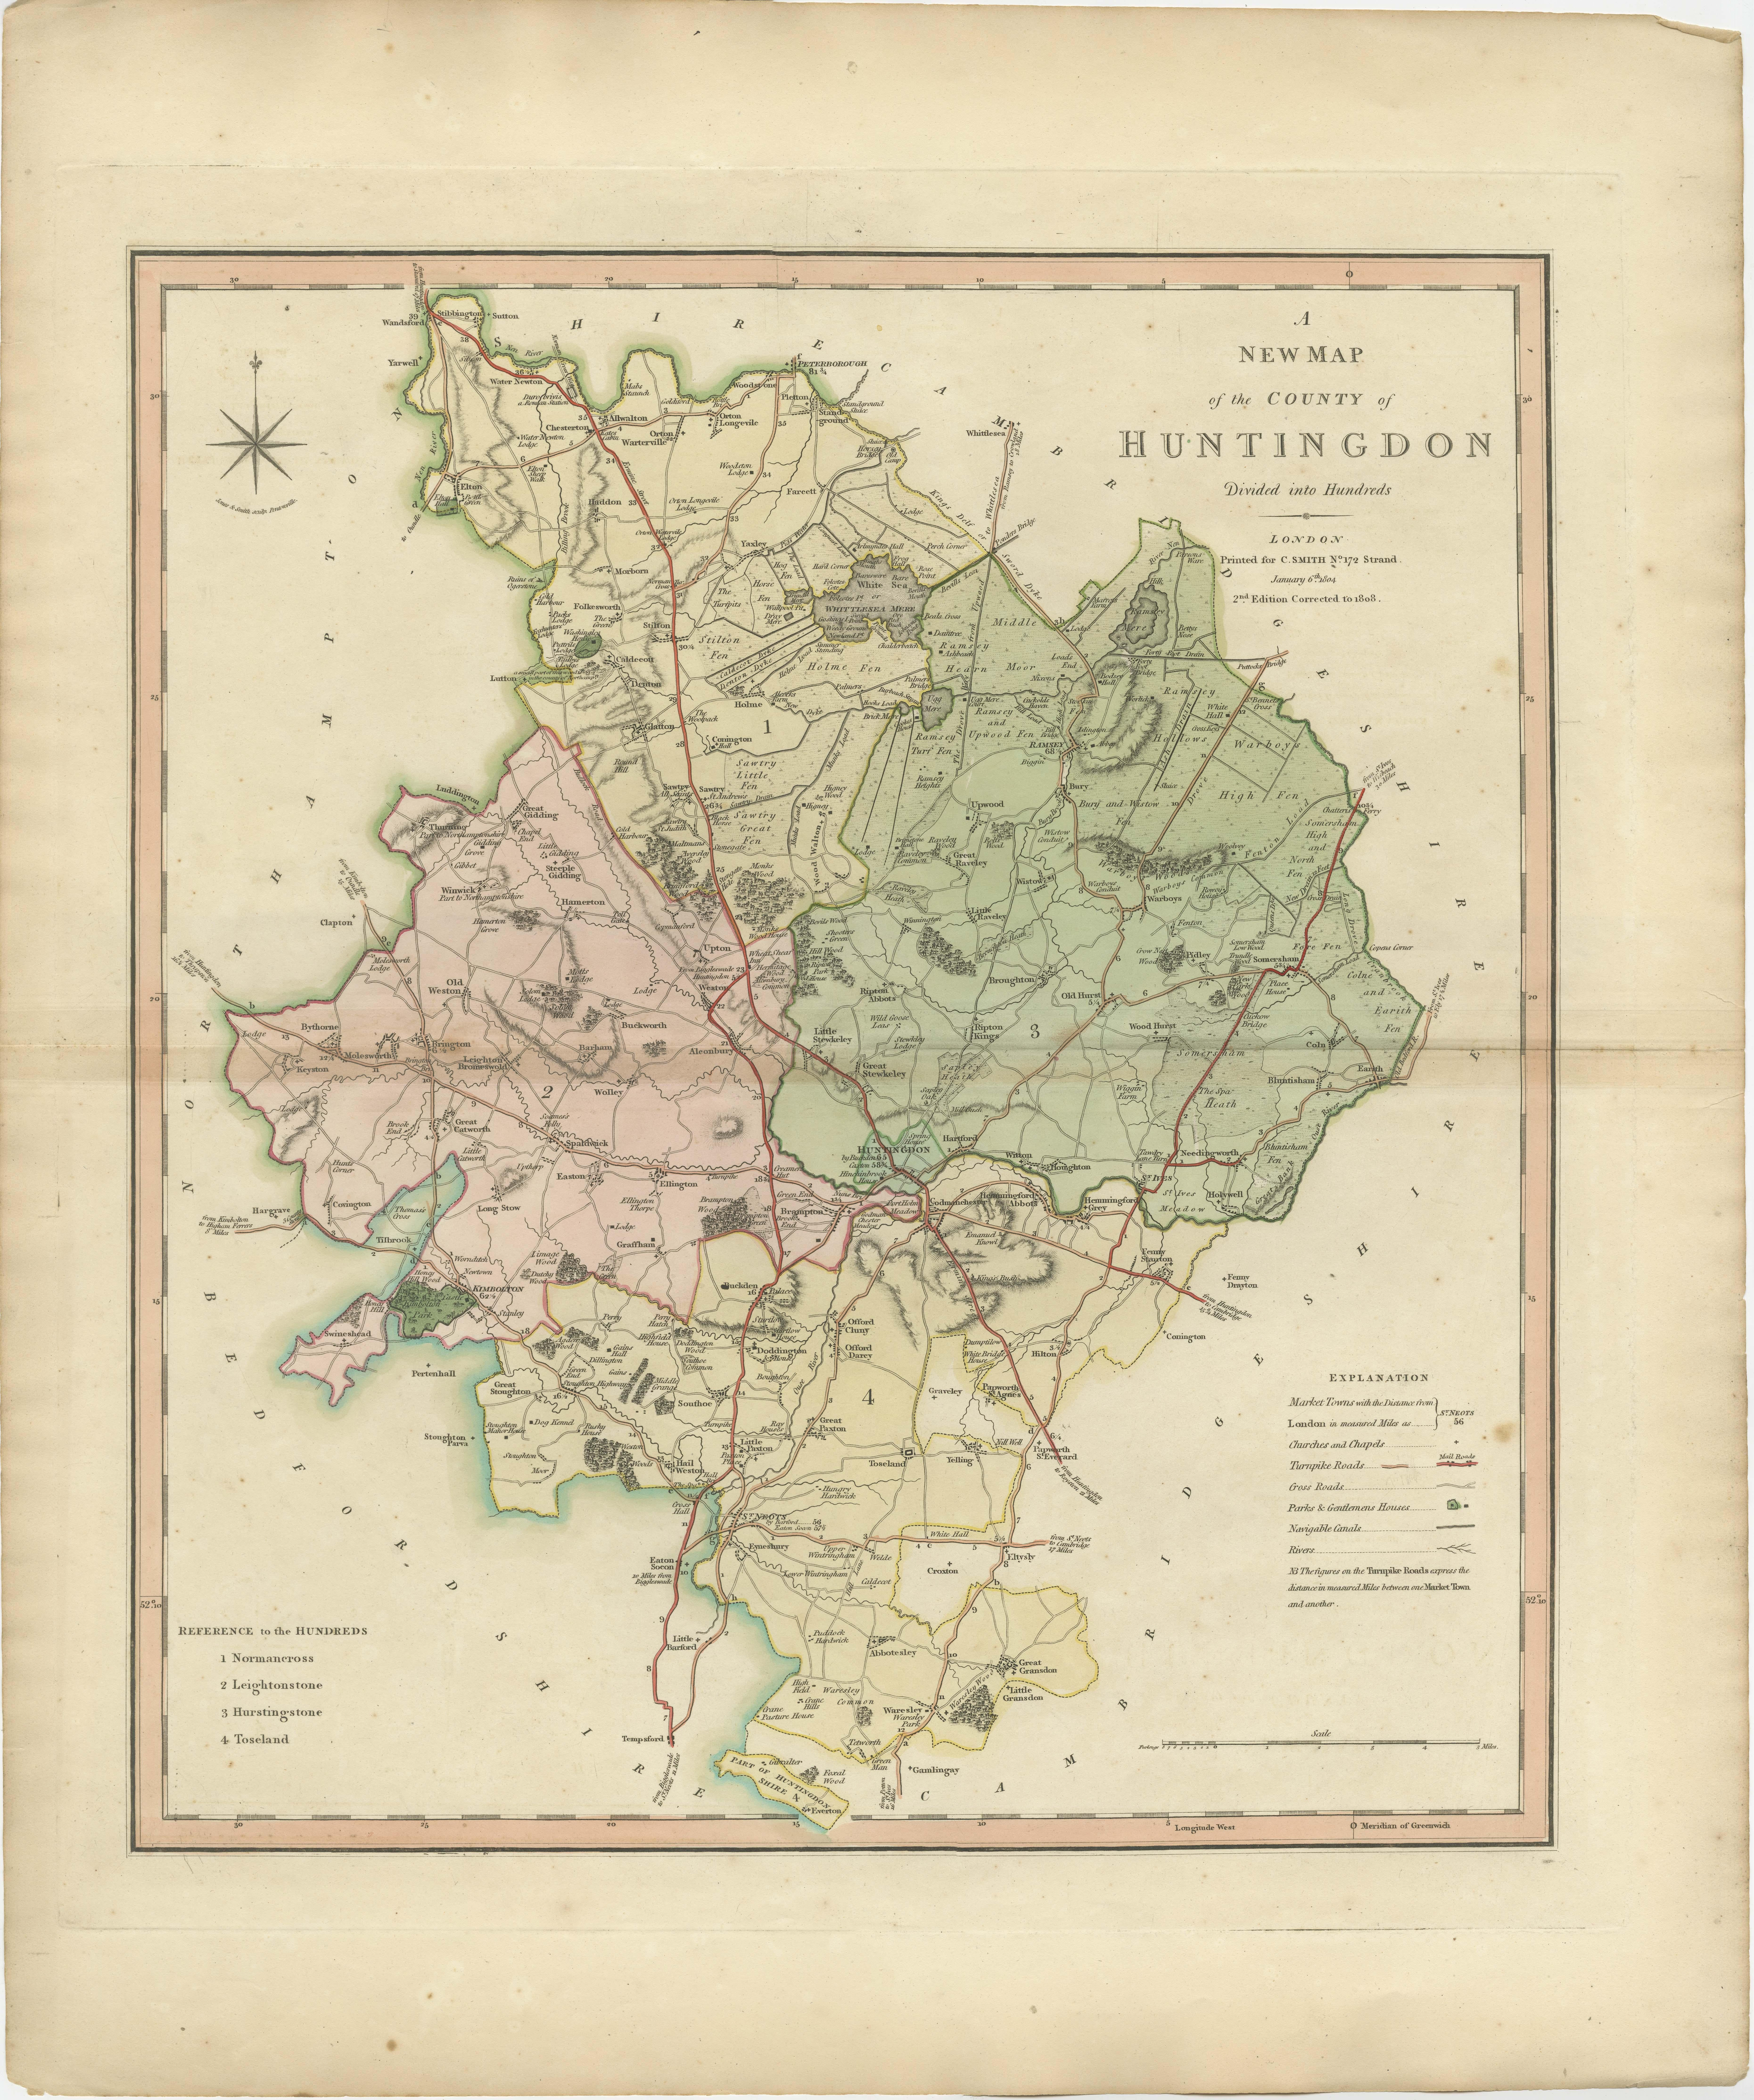 Carte de comté ancienne du Huntingdonshire publiée pour la première fois vers 1800. Les villes illustrées sont Kimbolton, Chesterton, Folkesworth et Great Stewkeley.

Charles Smith était un cartographe travaillant à Londres aux alentours de 1800.